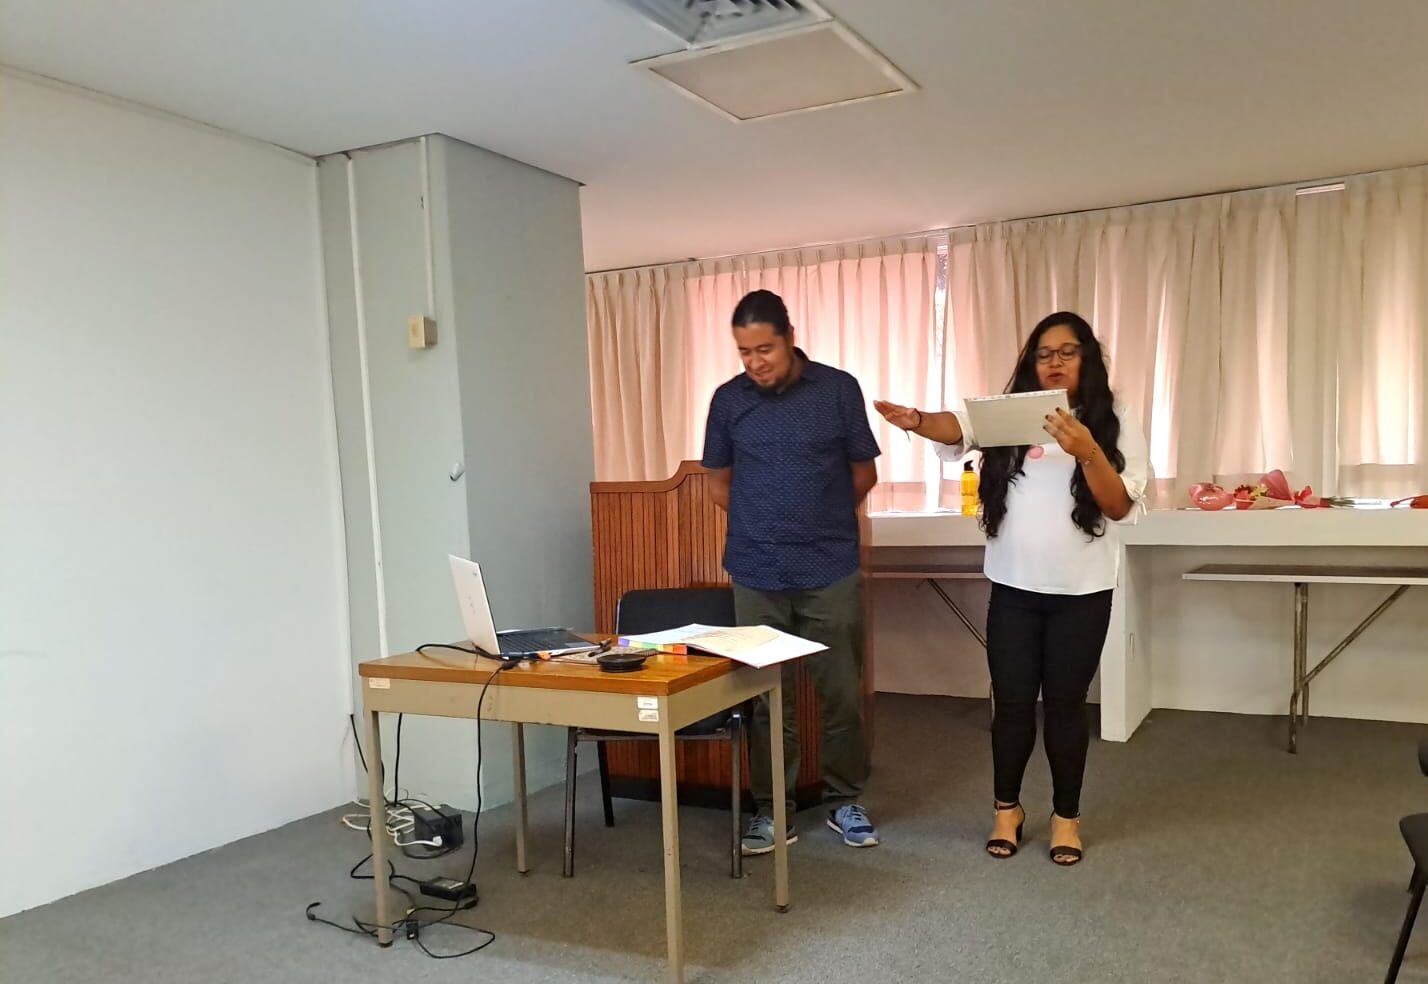 Daneyri Judith Pérez Narváez obtiene grado de Maestra en Ciencias con la tesis “Formas de estancia transitoria de la diáspora haitiana en la ciudad de Tapachula, Chiapas”